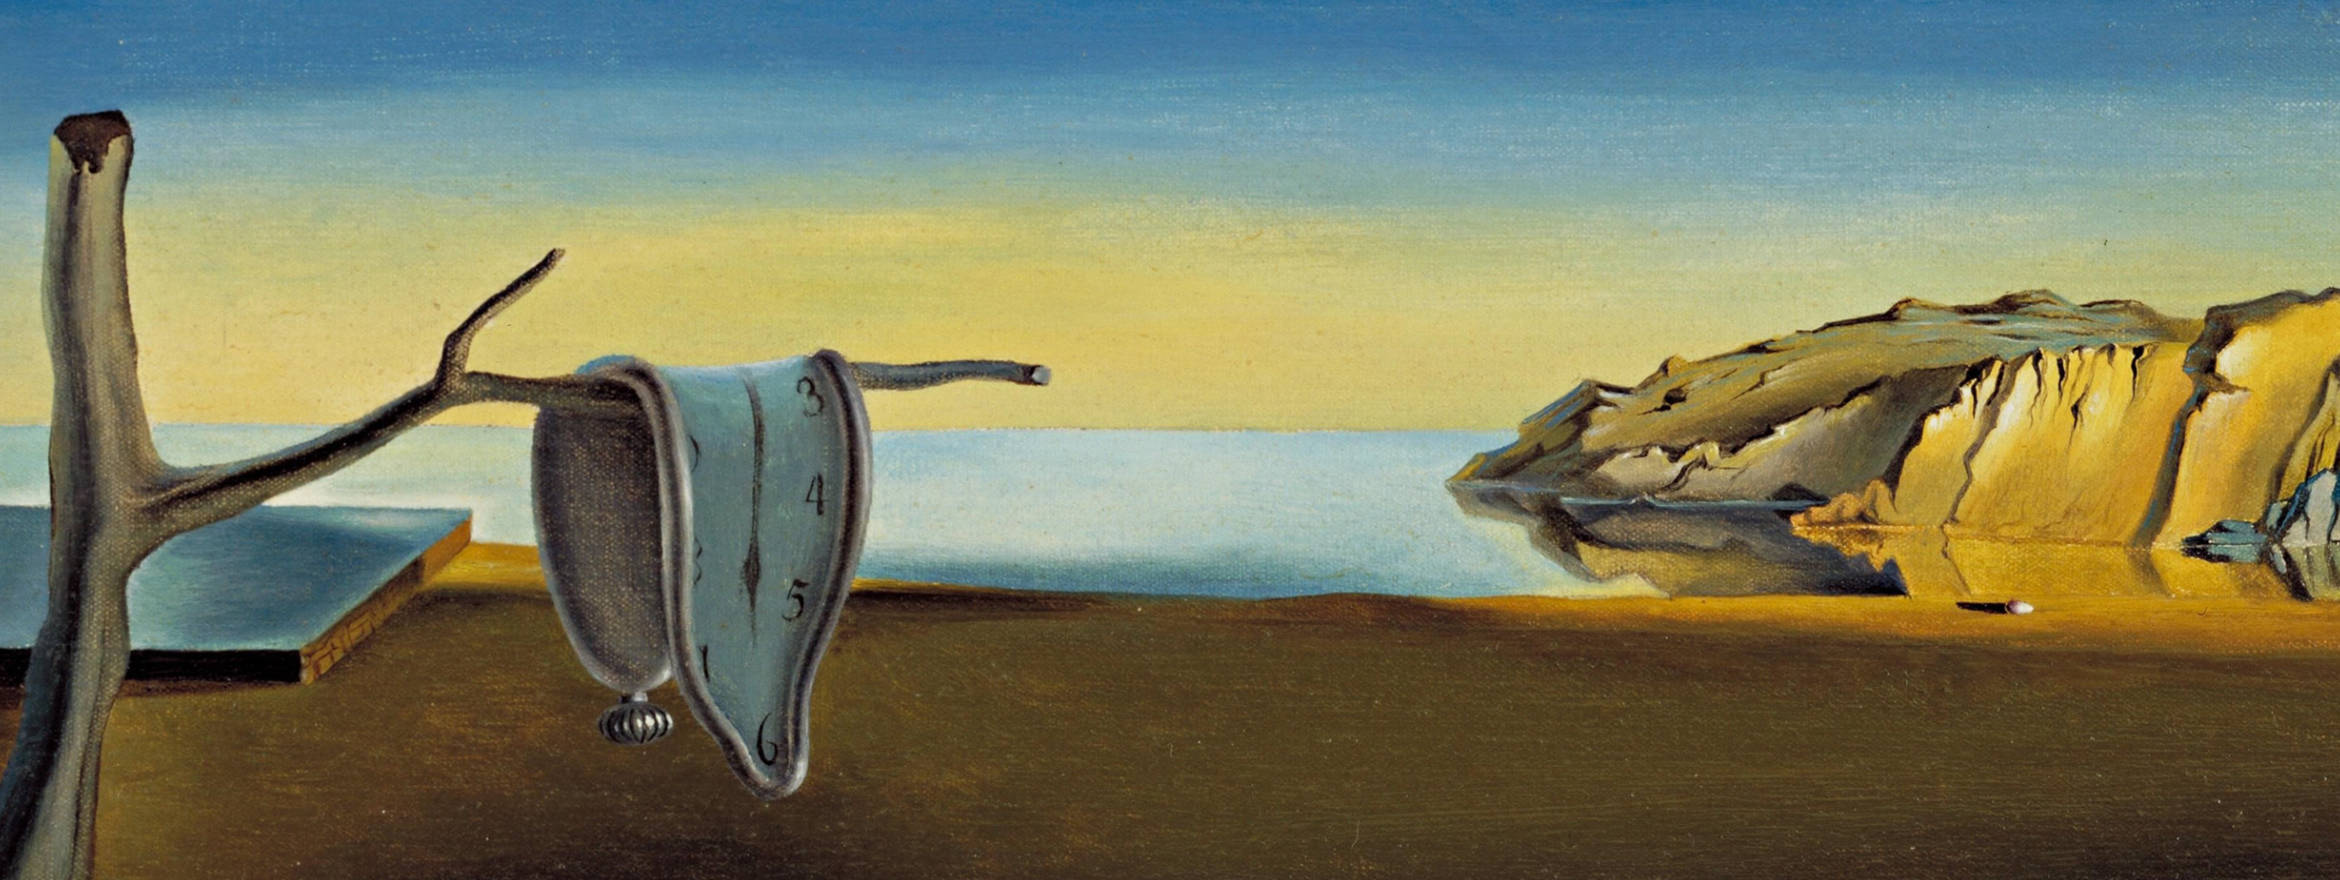 Peristence of Memory by Dalí